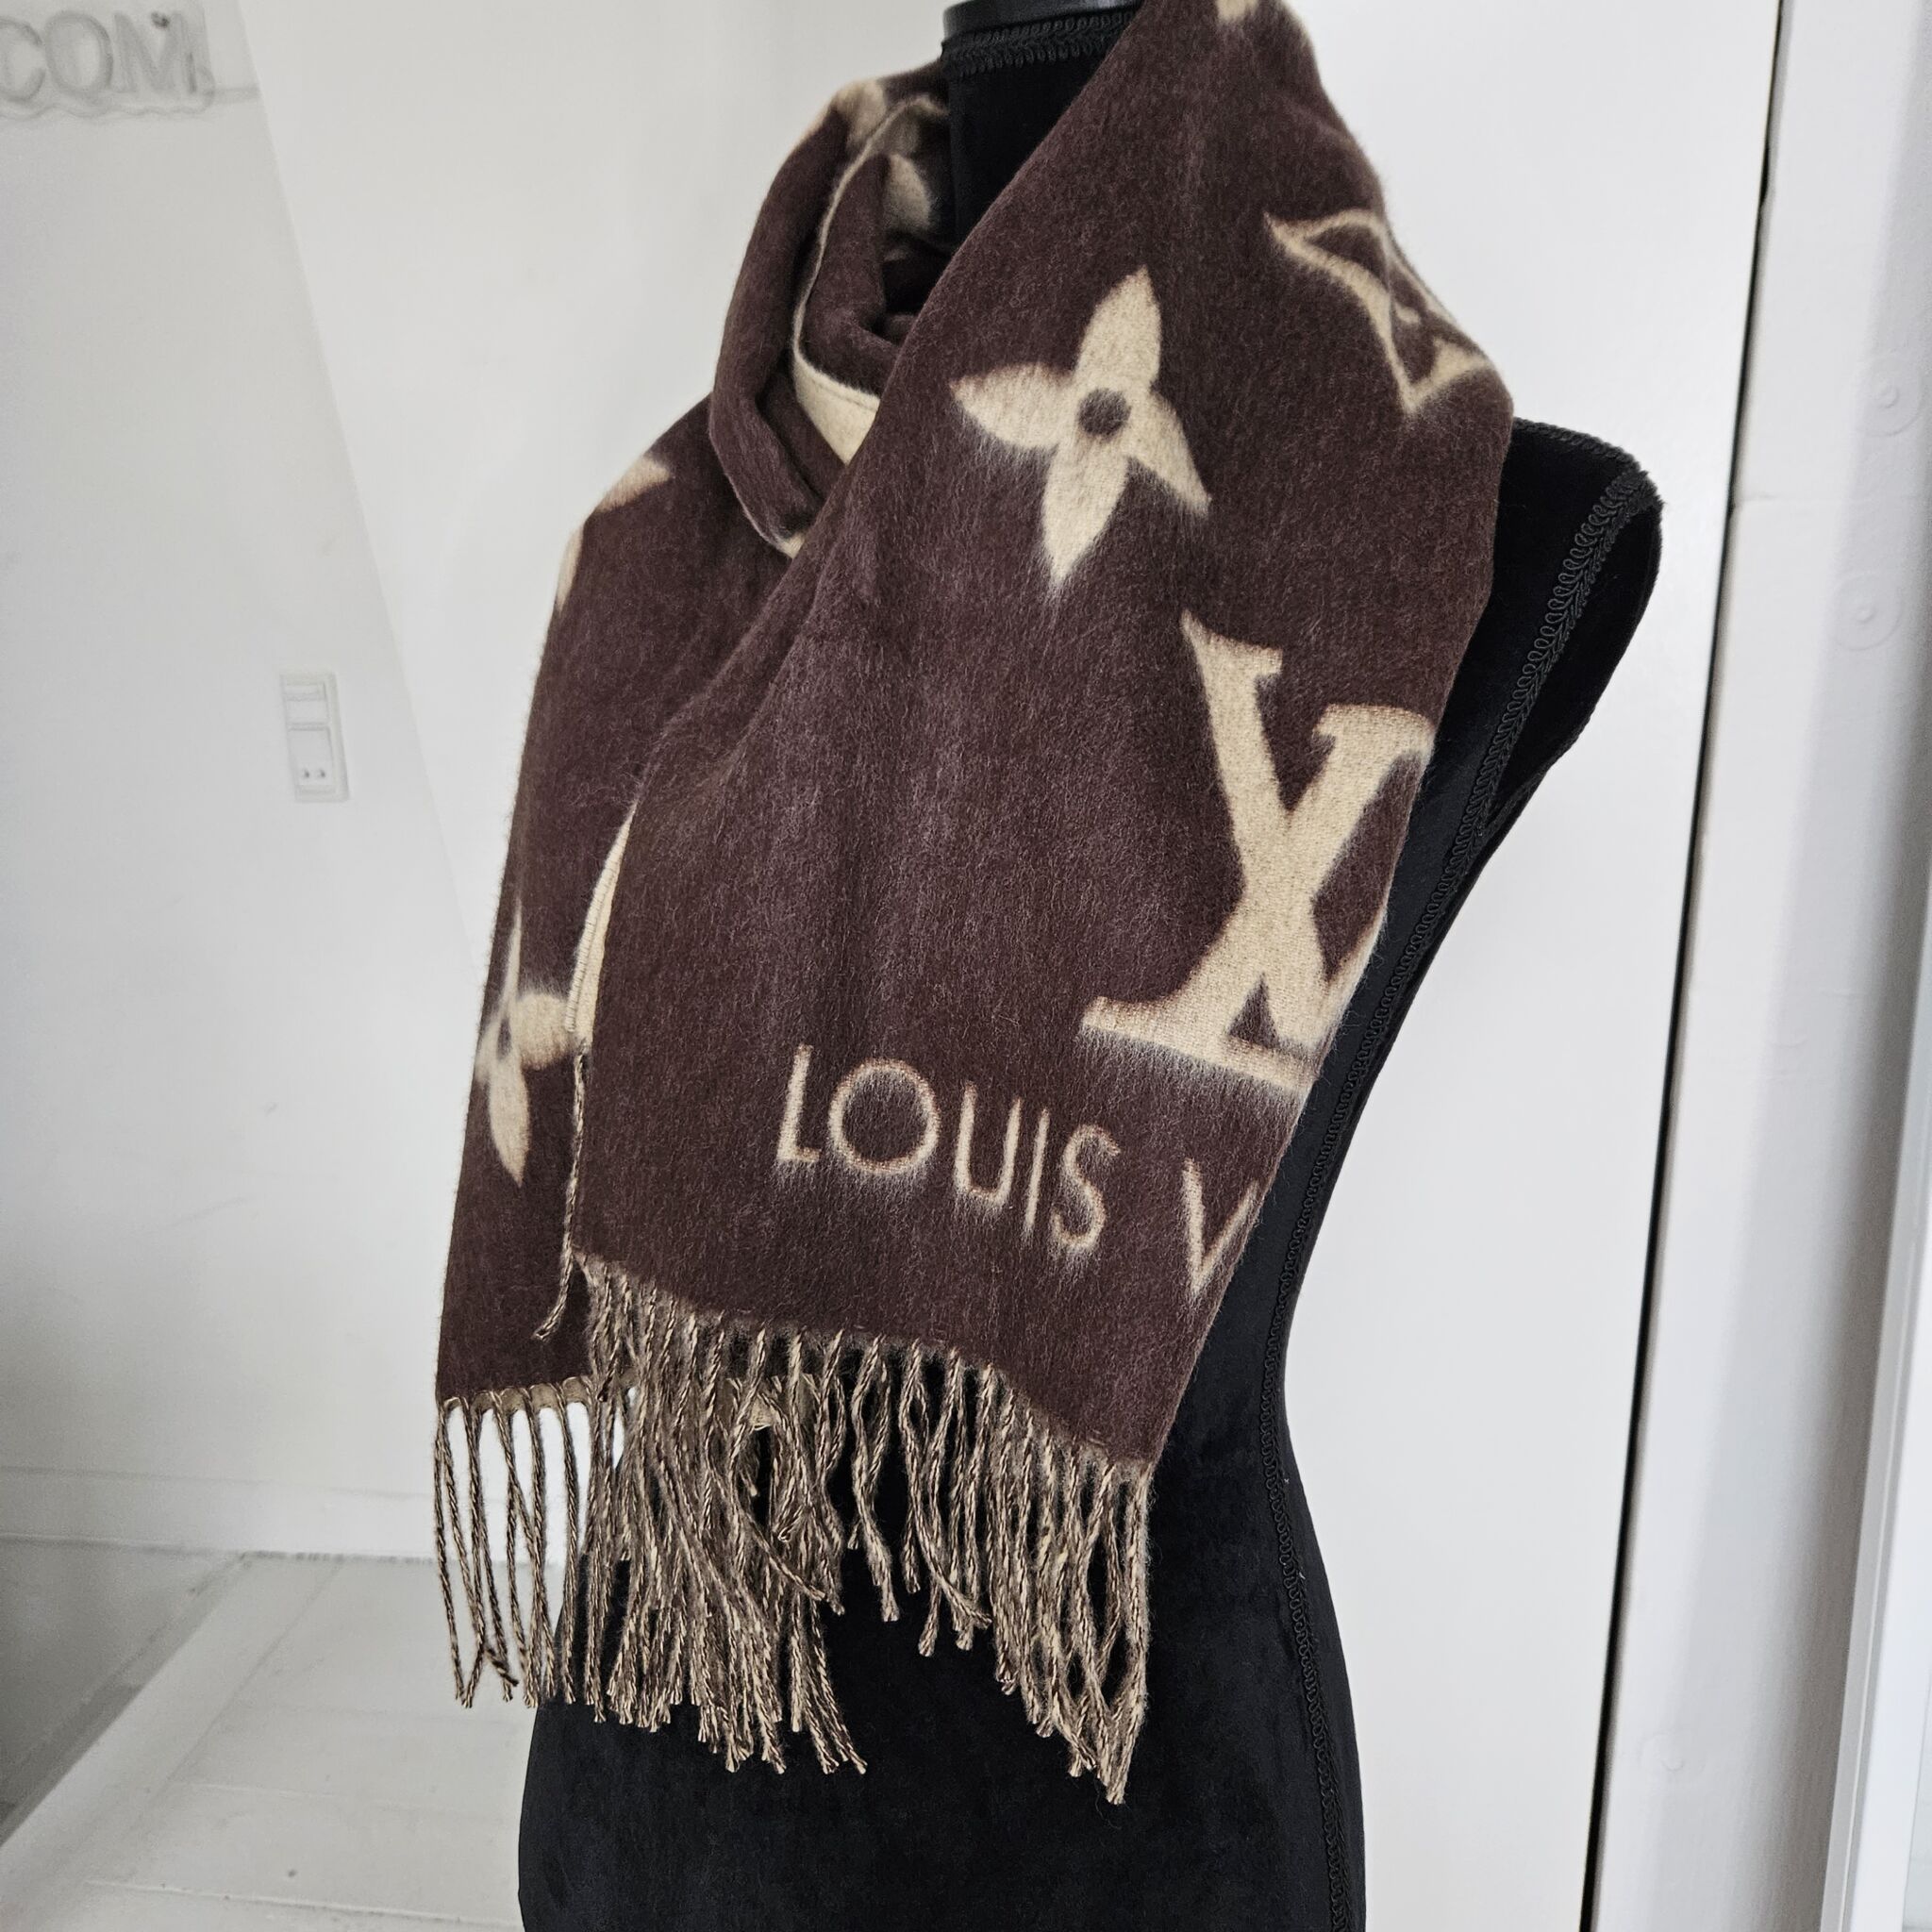 Louis Vuitton - Reykjavik Scarf - Cashmere - Black - Women - Luxury